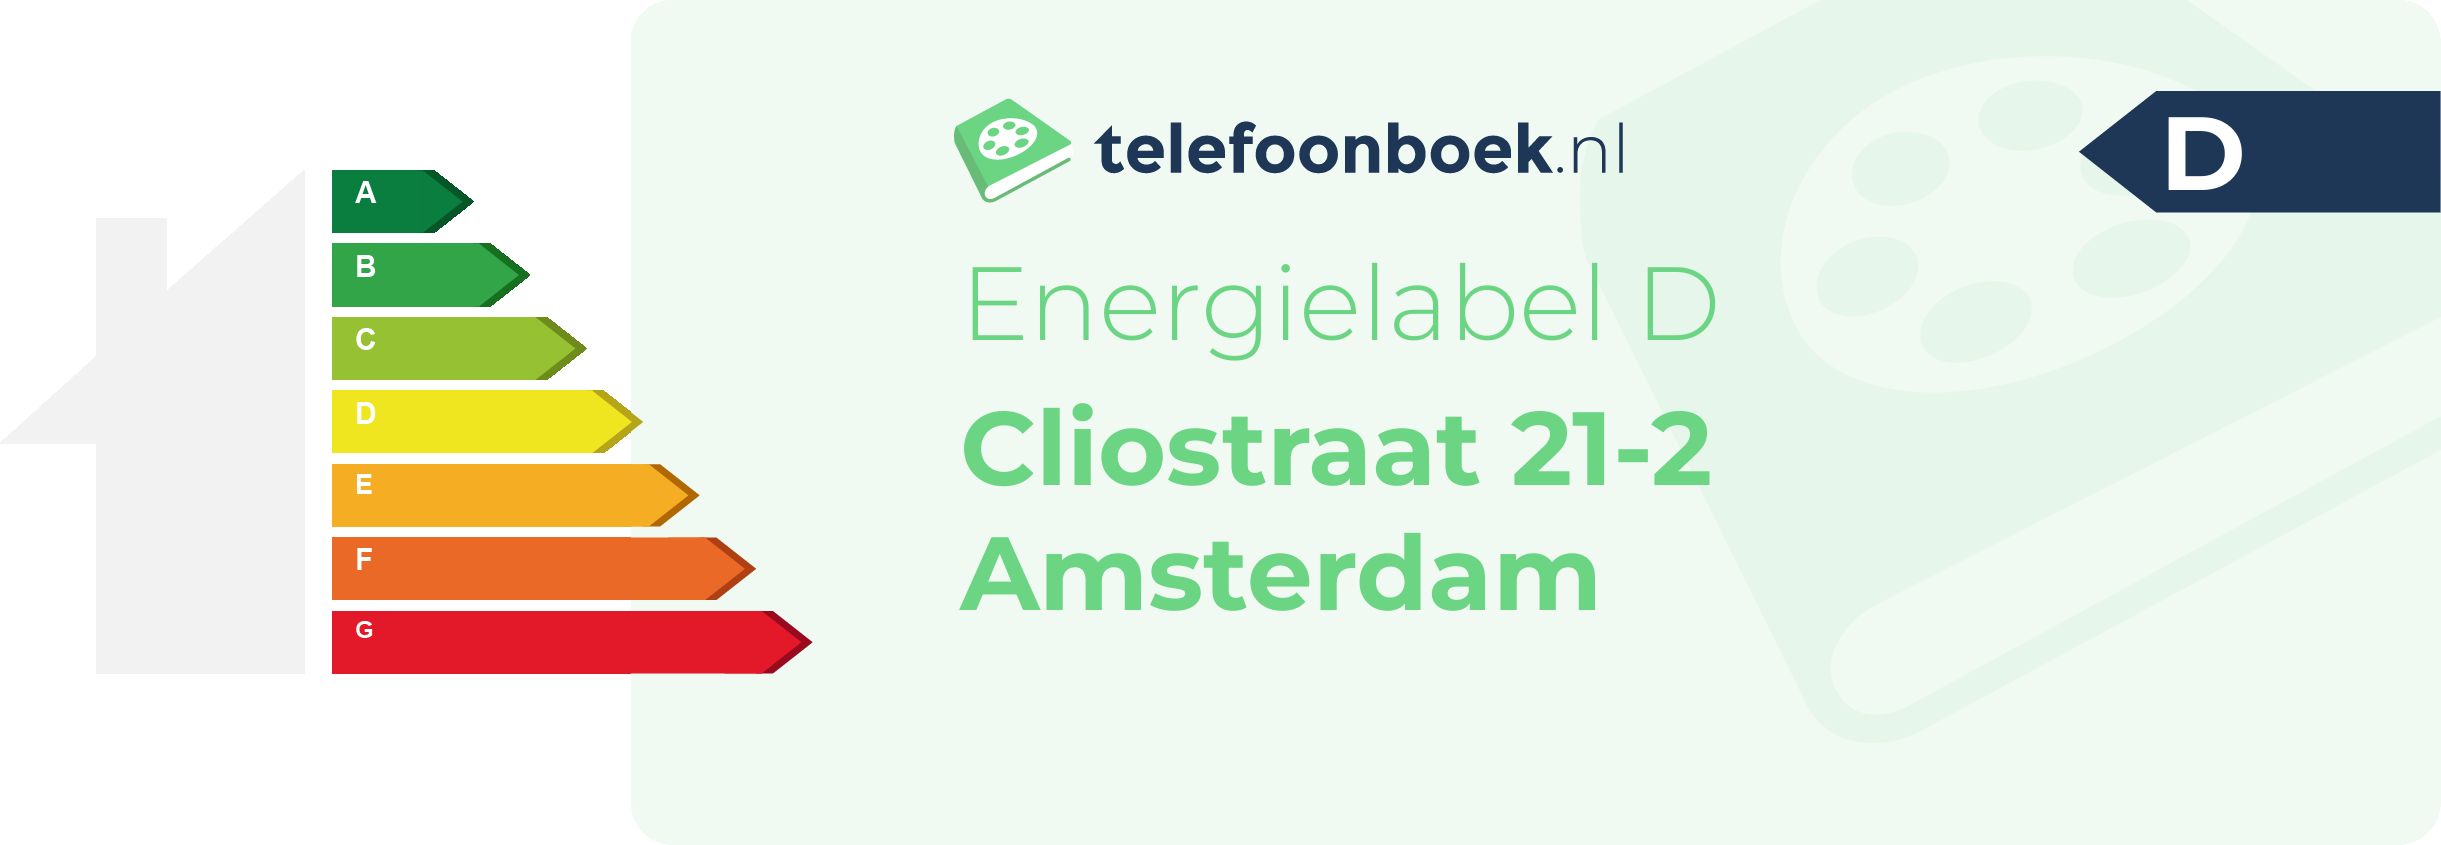 Energielabel Cliostraat 21-2 Amsterdam